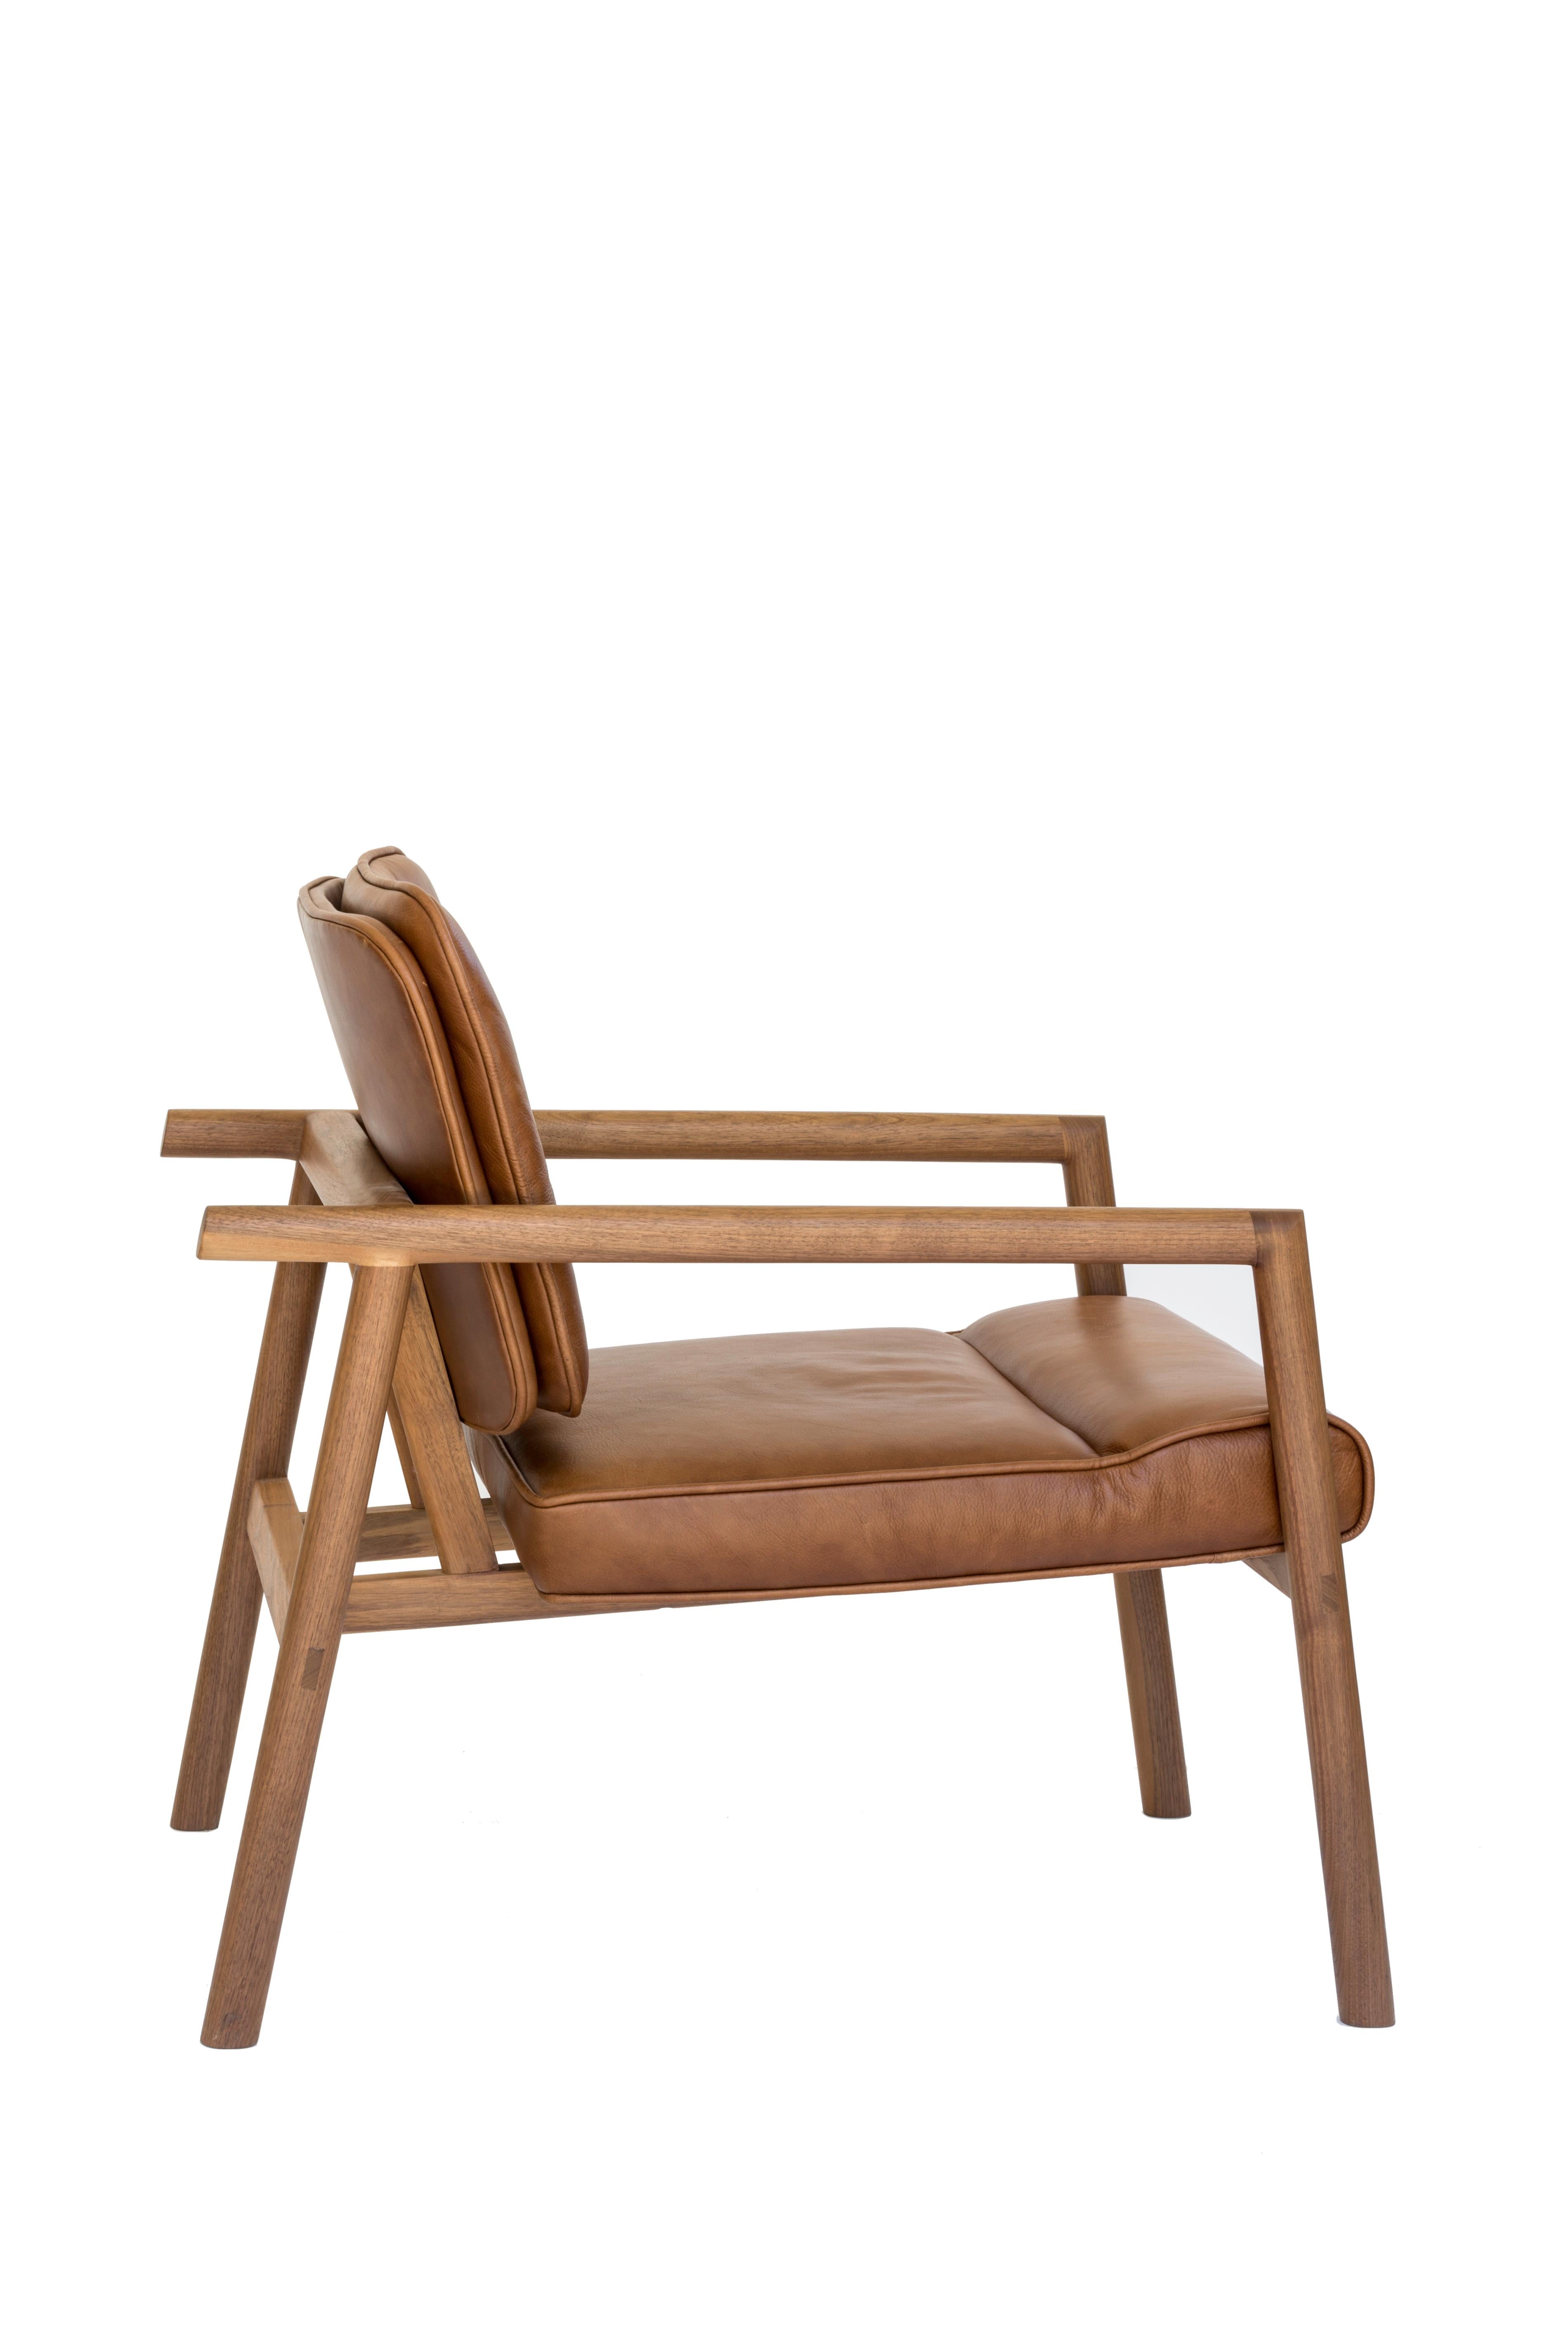 Massivholzkonstruktion mit handgeschnittenen Tischlerarbeiten und individuell gepolstertem Sitz und Rückenlehne. Dieser Stuhl ist in Nussbaum und kamelfarbenem Leder gehalten.

Vorrätige Lederauswahl: schwarz, oliv, camel oder vegtan